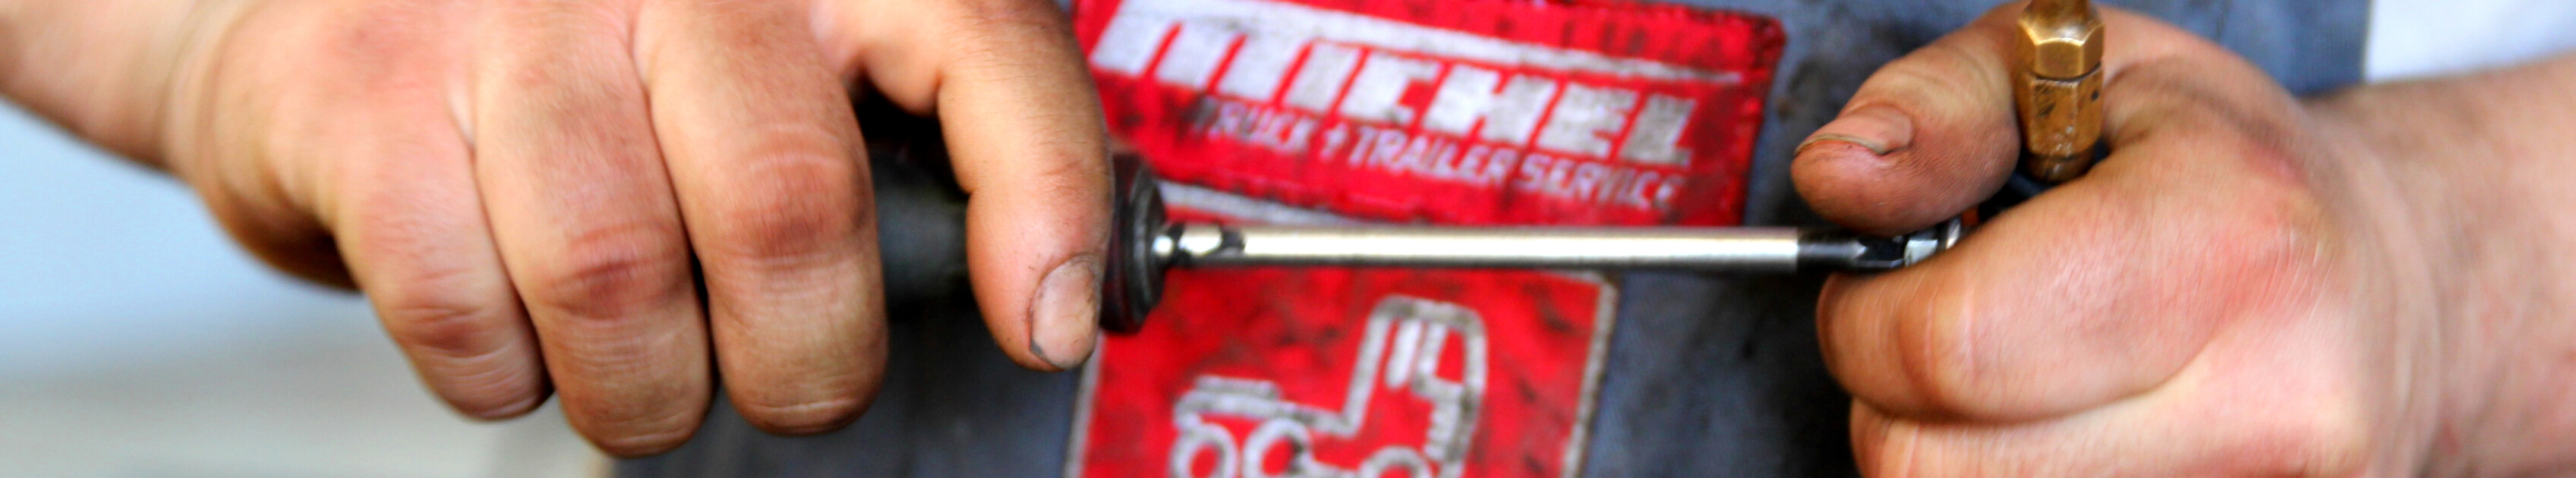 Mitarbeiter einer NKW-Werkstatt mit schmutzigen Händen prüft Schraube mit Schraubendreher